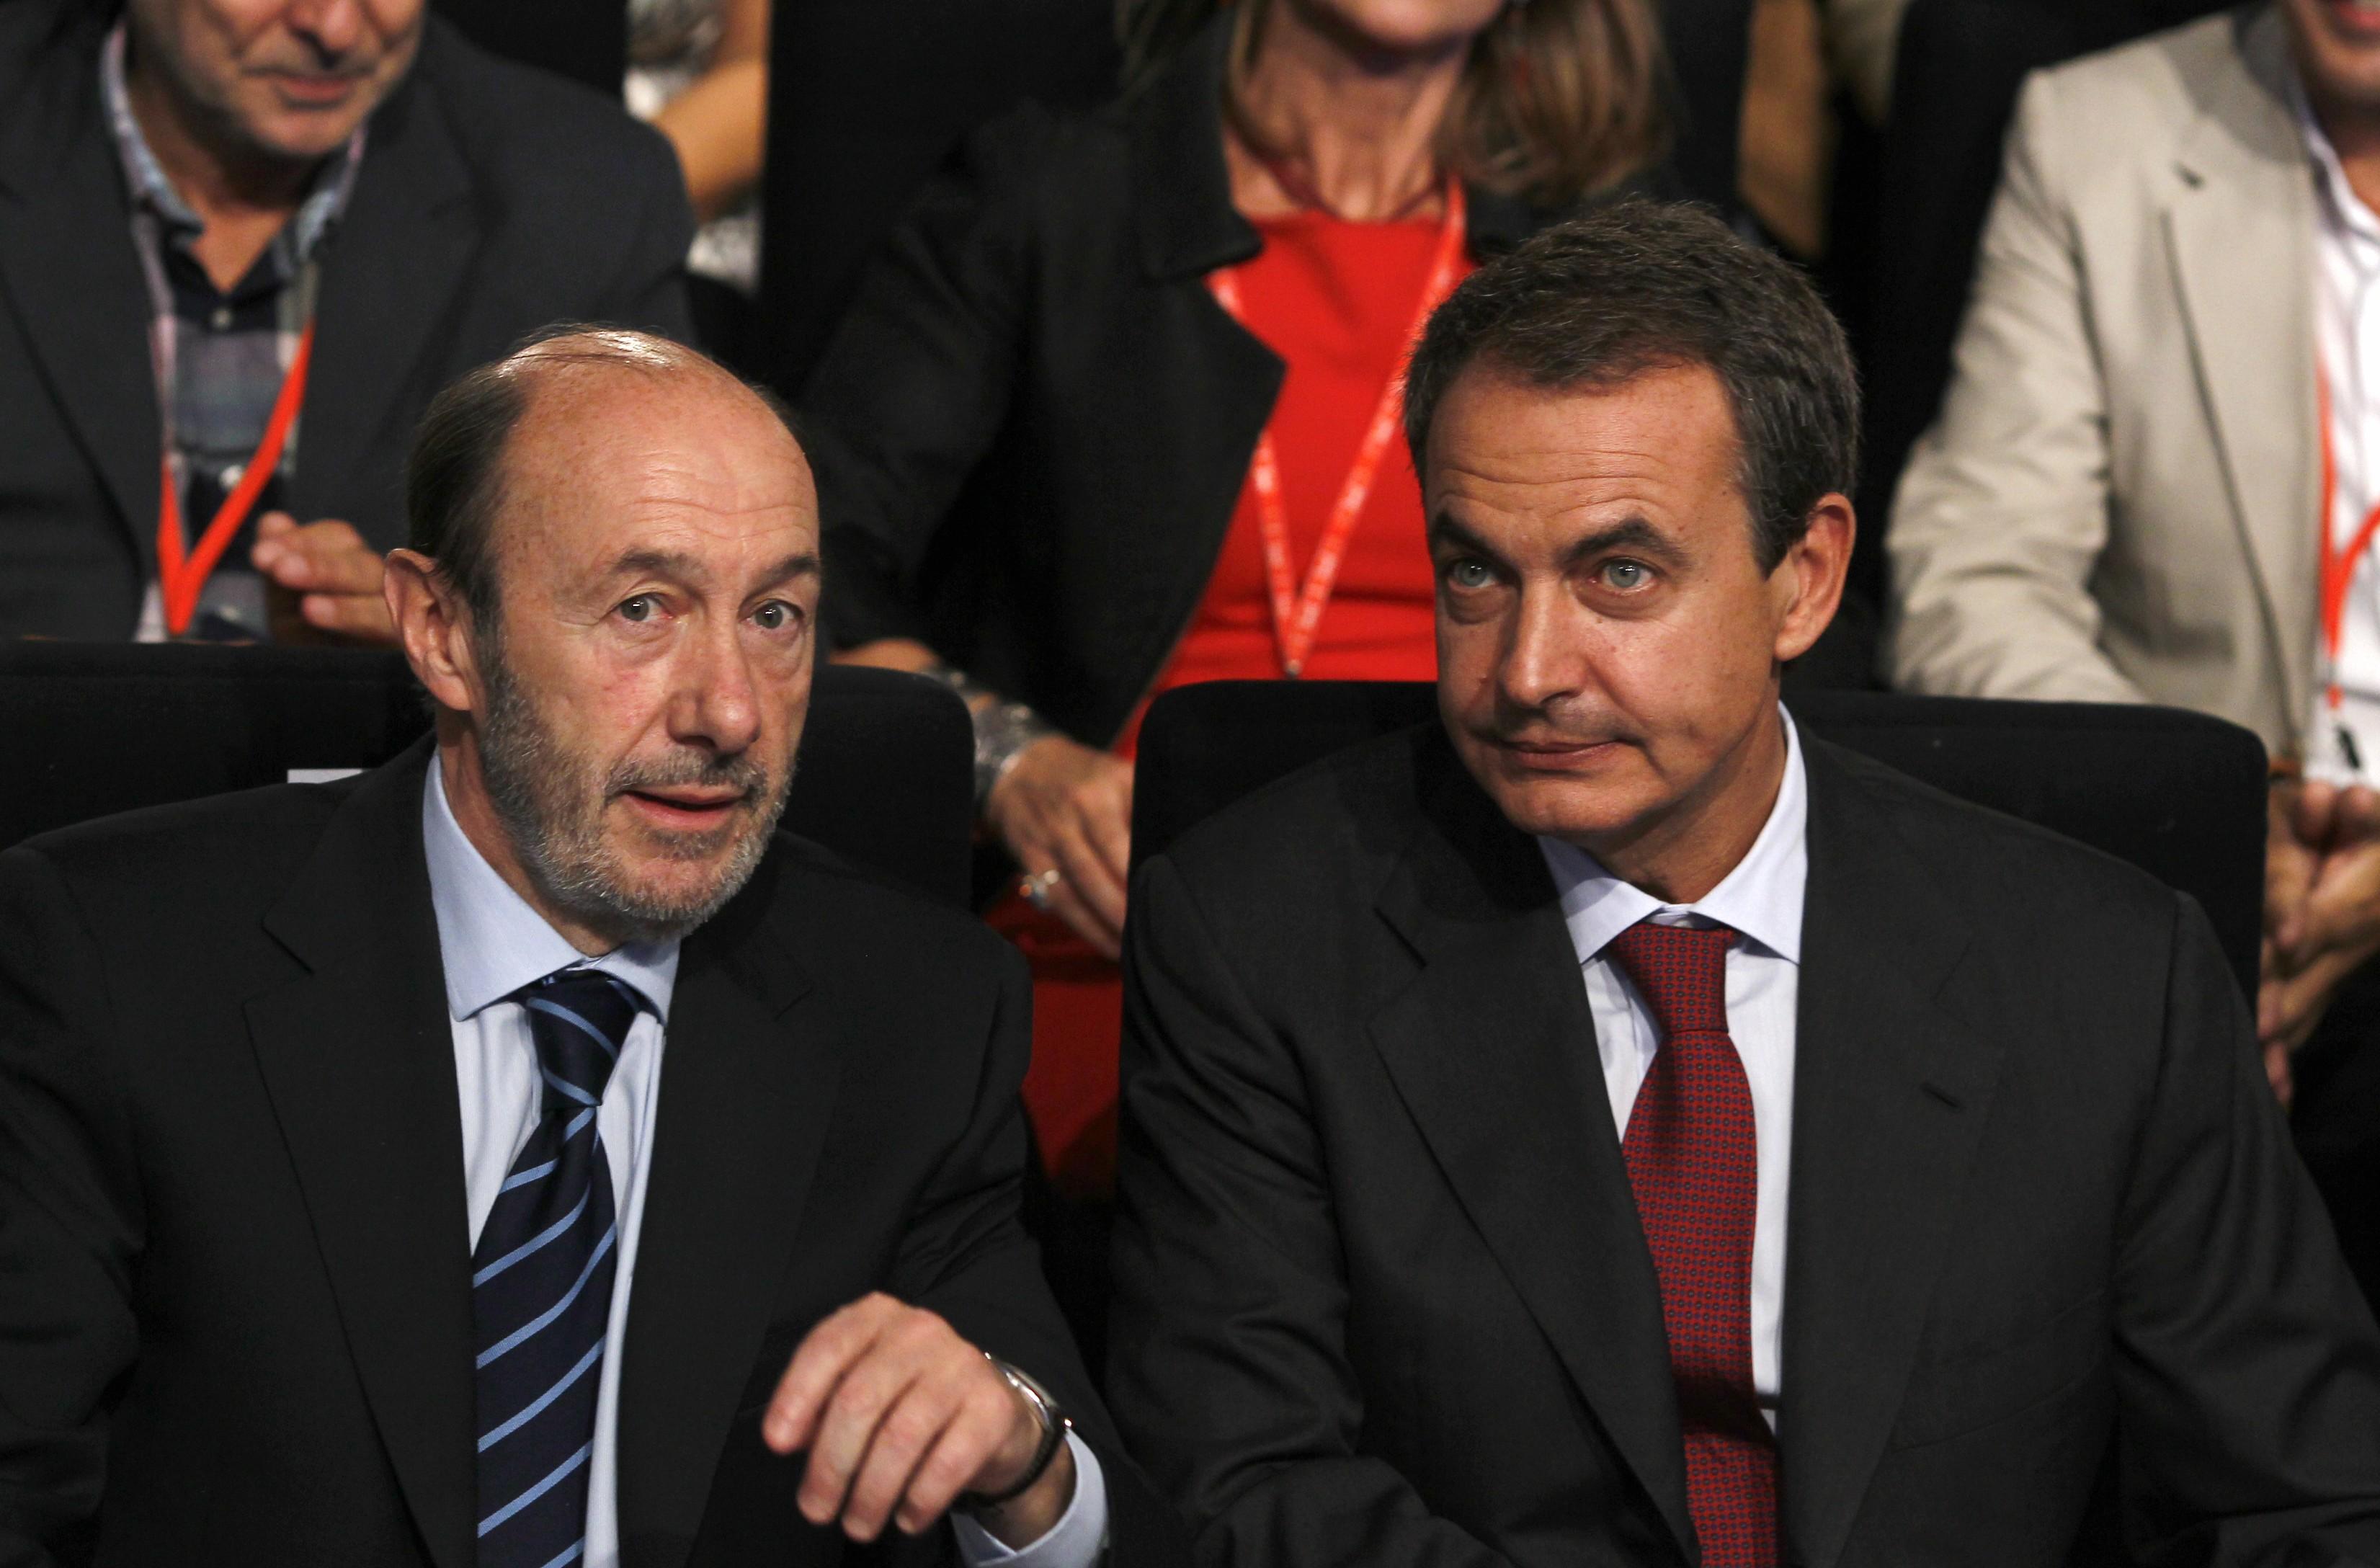  El exsecretario general del PSOE y exvicepresidente del Gobierno Alfredo Pérez Rubalcaba y el expresidente del Gobierno José Luis Rodríguez Zapatero durante un mitin del PSOE en 2011 